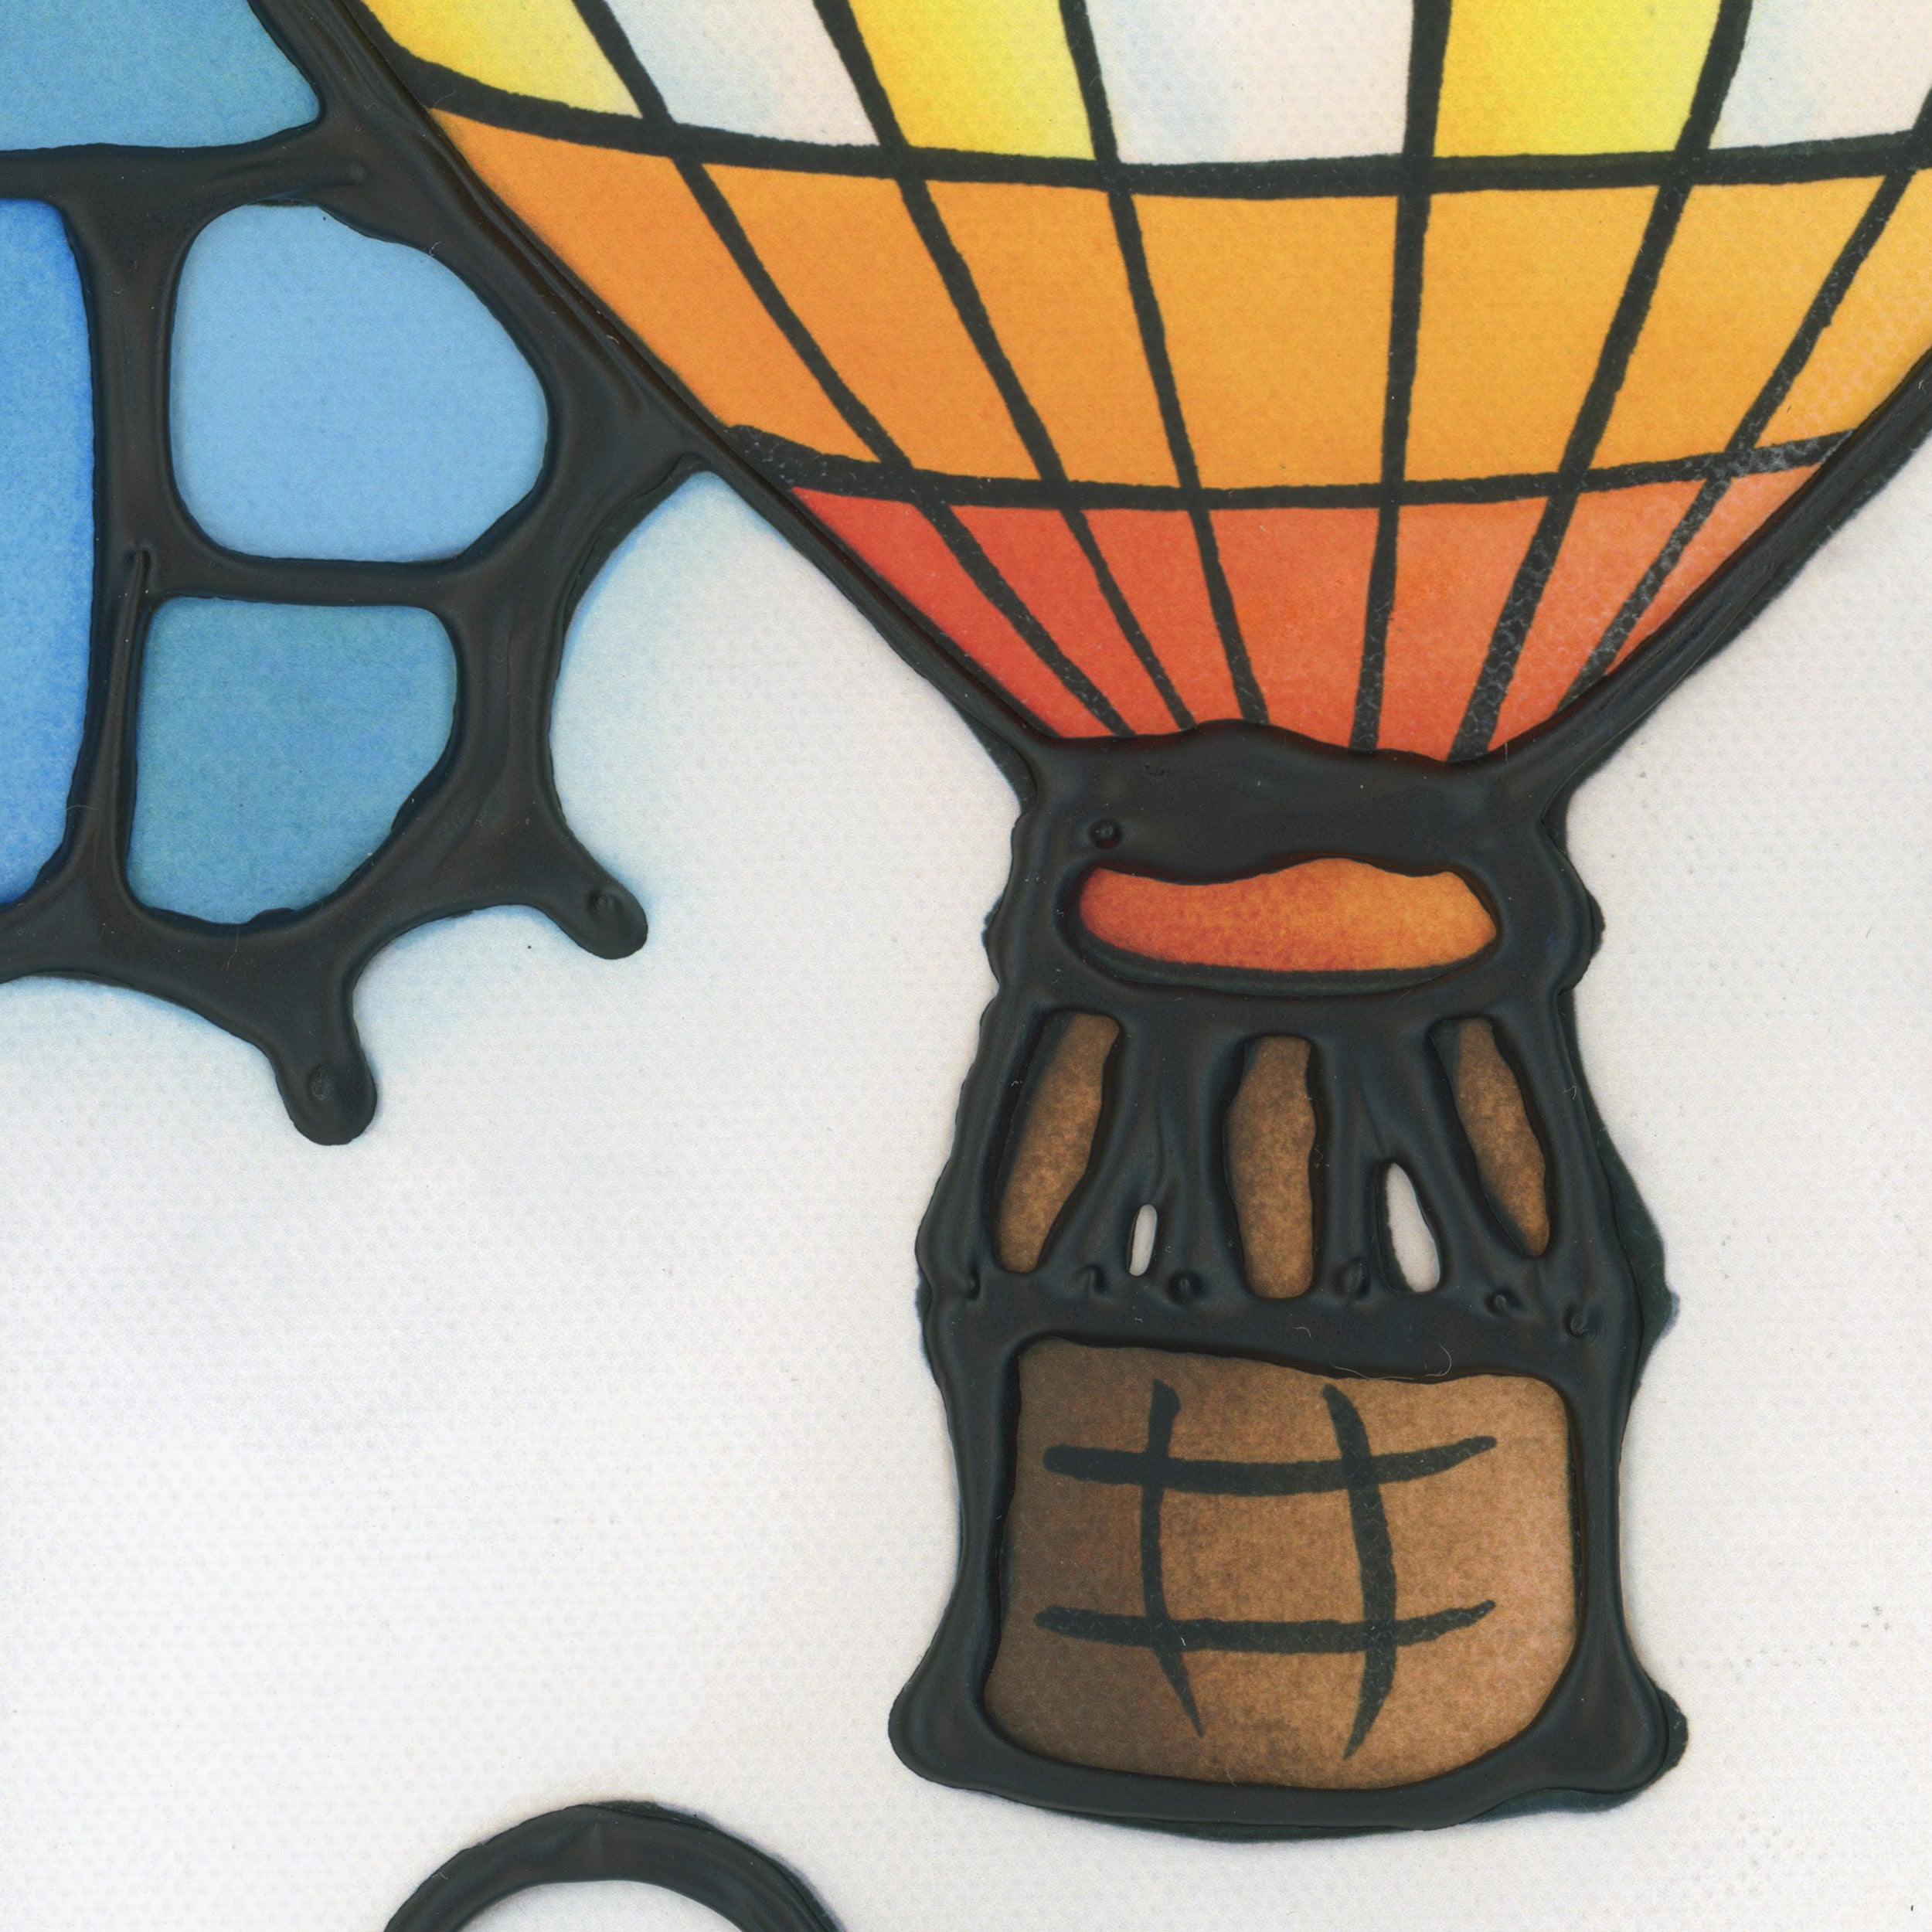 Hot Air Balloons Canvas Print 9" x 12"